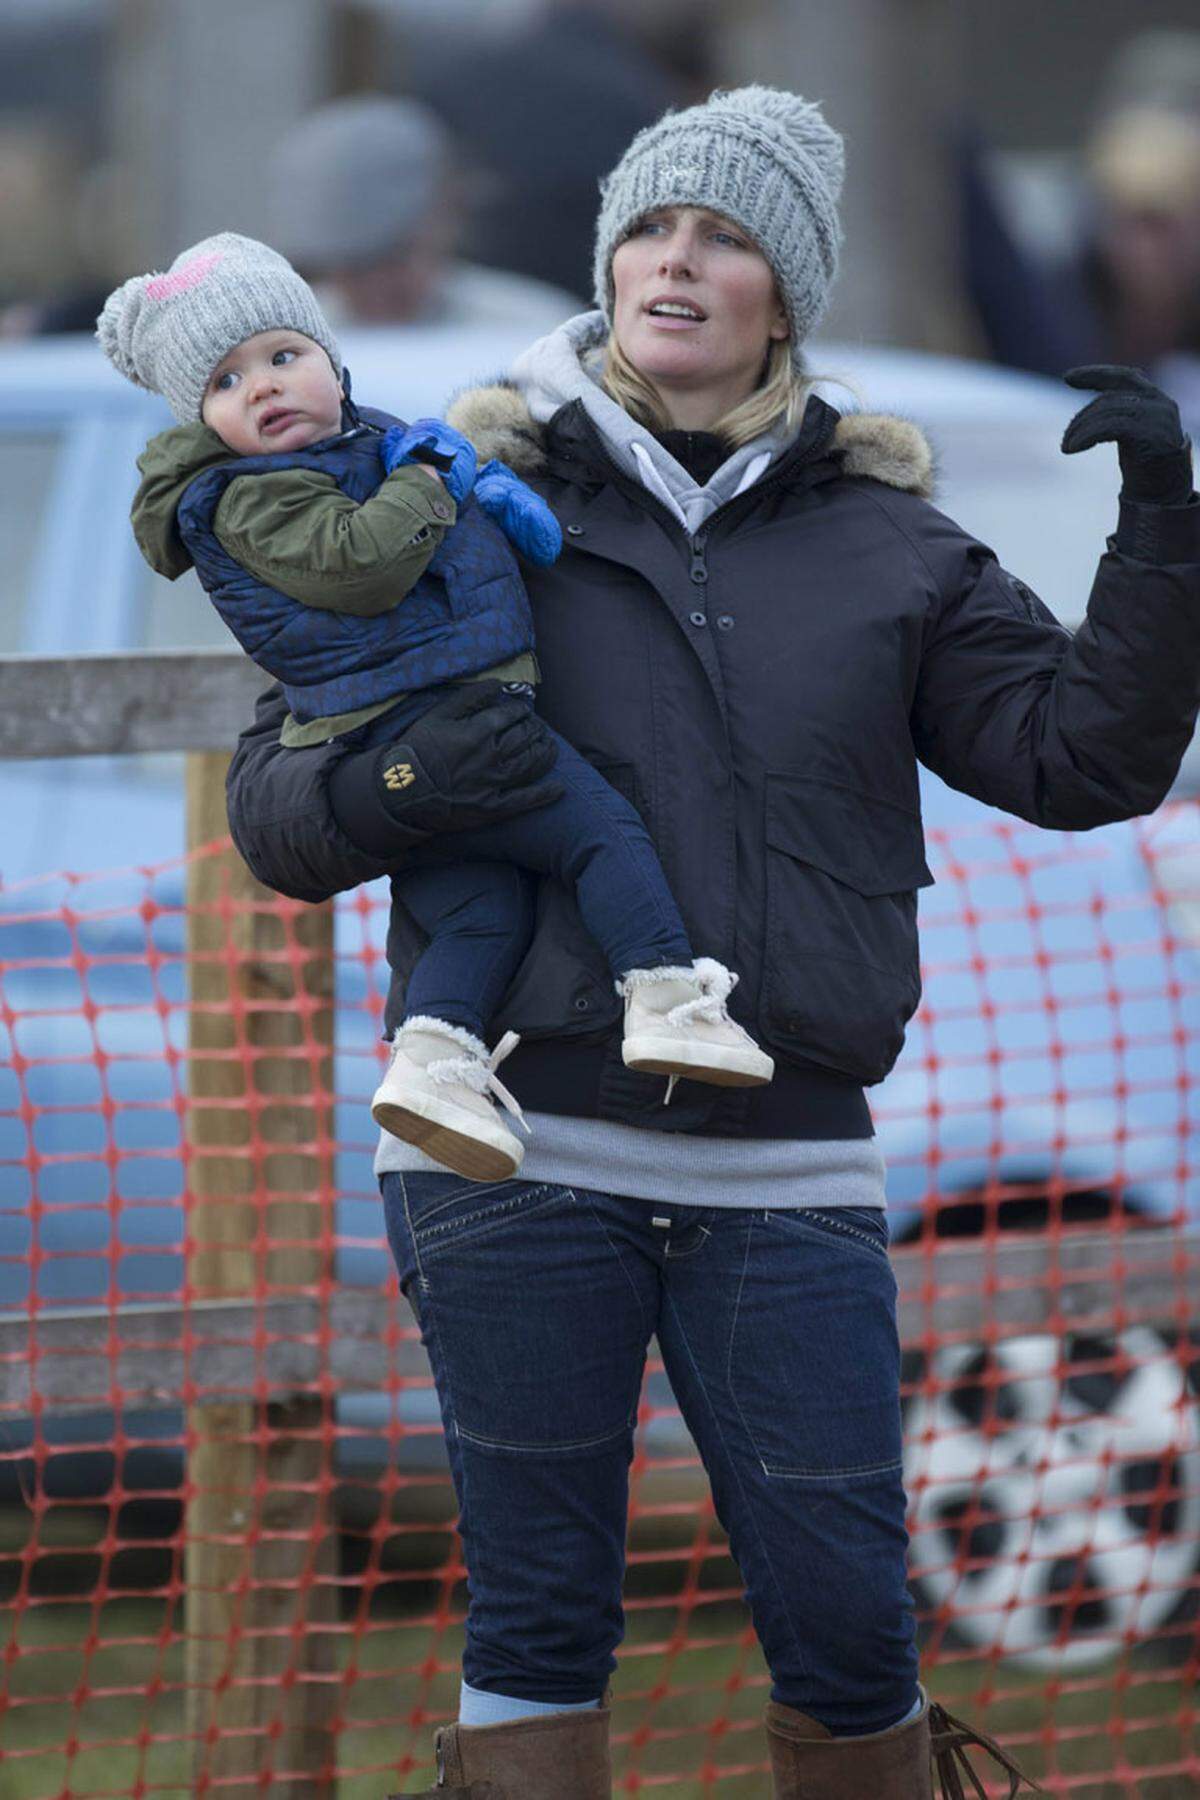 Am 17. Jänner 2014 gab es für den britischen Königshof Nachwuchs. Zara Philips, die angebliche Lieblingsenkelin von Queen Elizabeth, brachte ein Mädchen zur Welt. Zara und Ehemann Mike Tendall tauften sie Mia Grace.